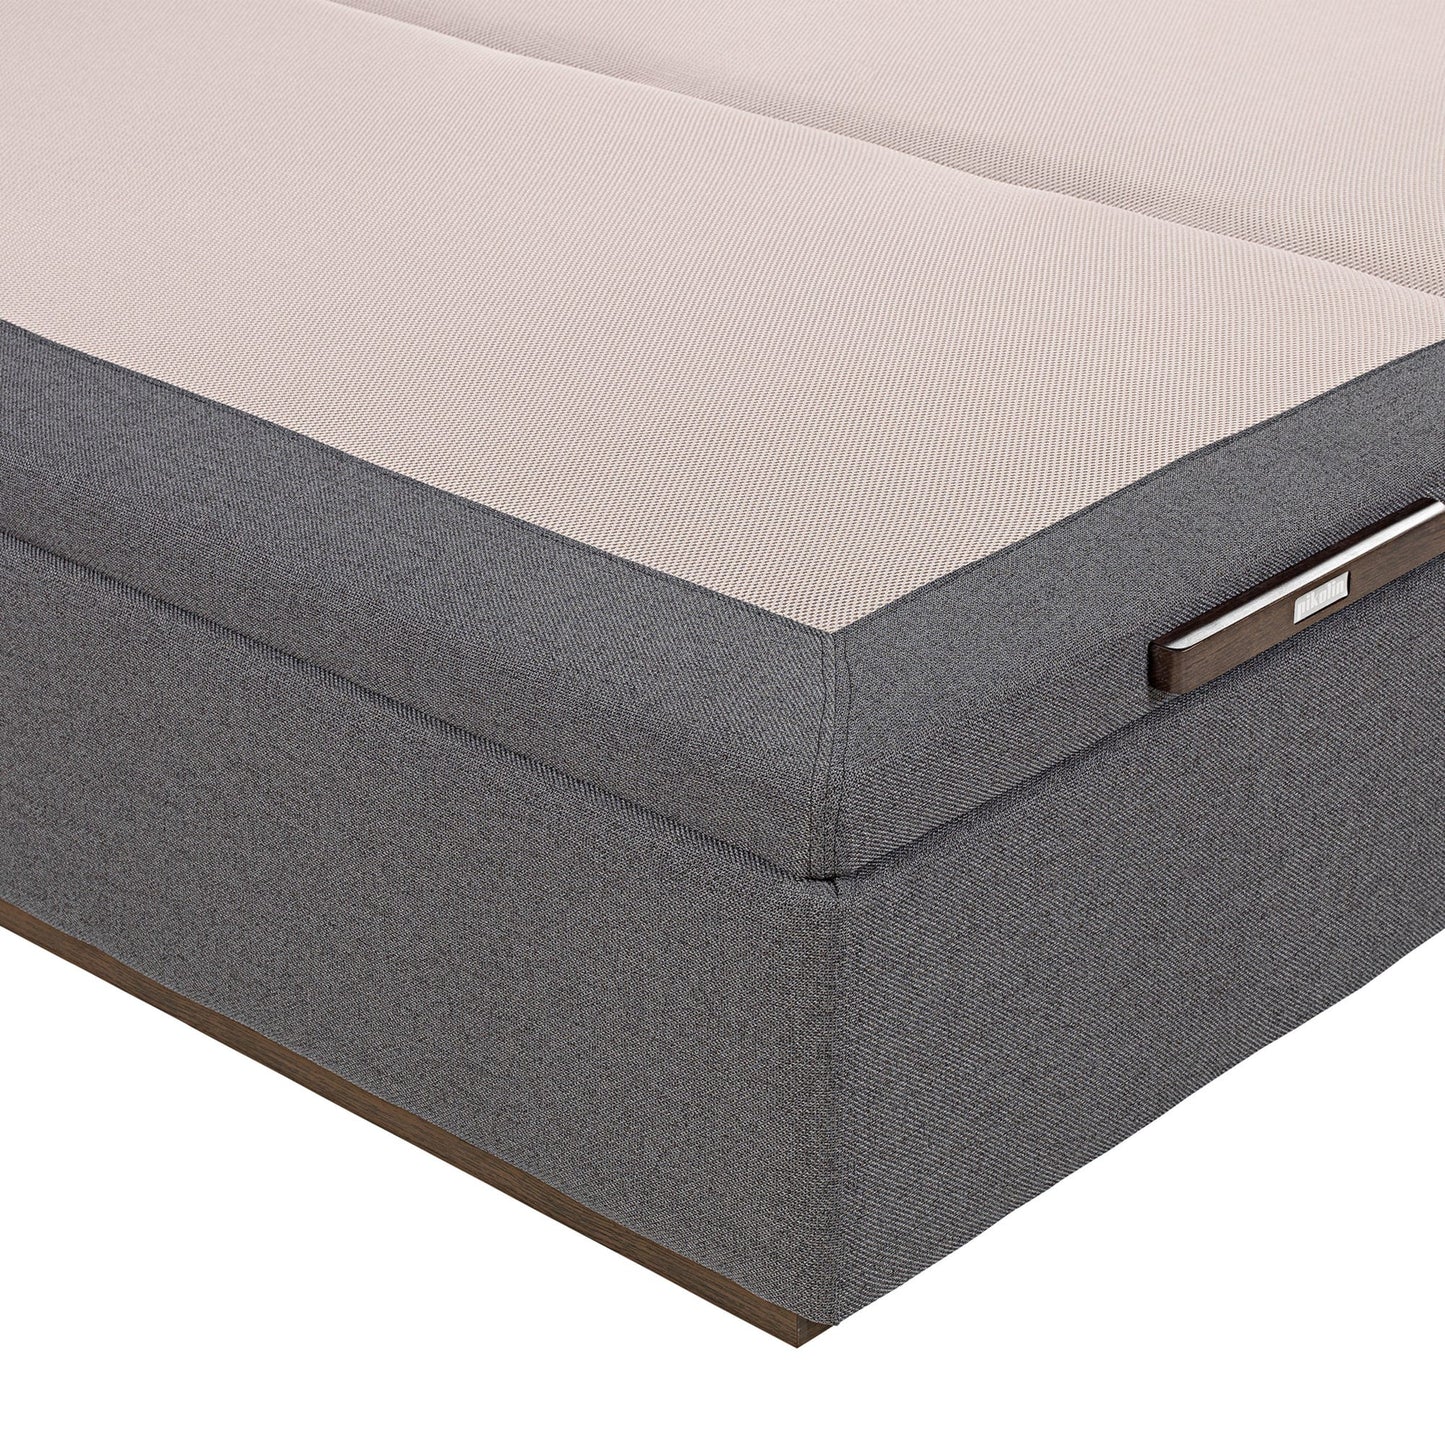 Canapé abatible de tapa doble de color piombo - TEXTIL - 150x190